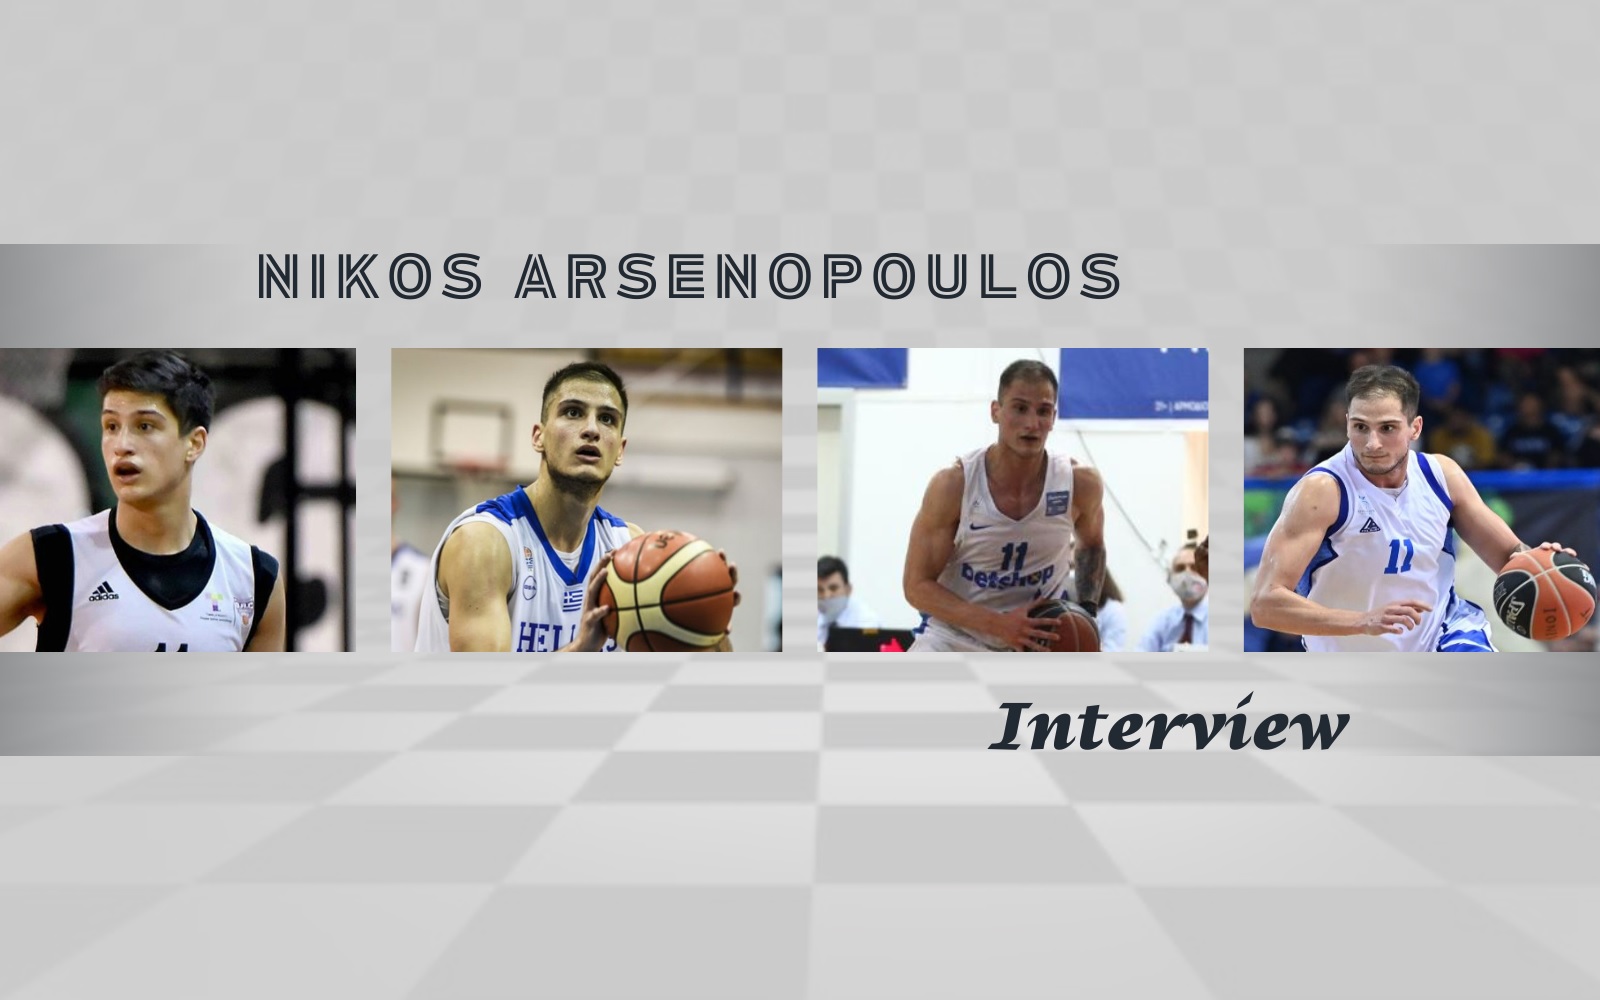 Αρσενόπουλος: «Είναι μια πολύ σημαντική ευκαιρία που έχω στη καριέρα μου»